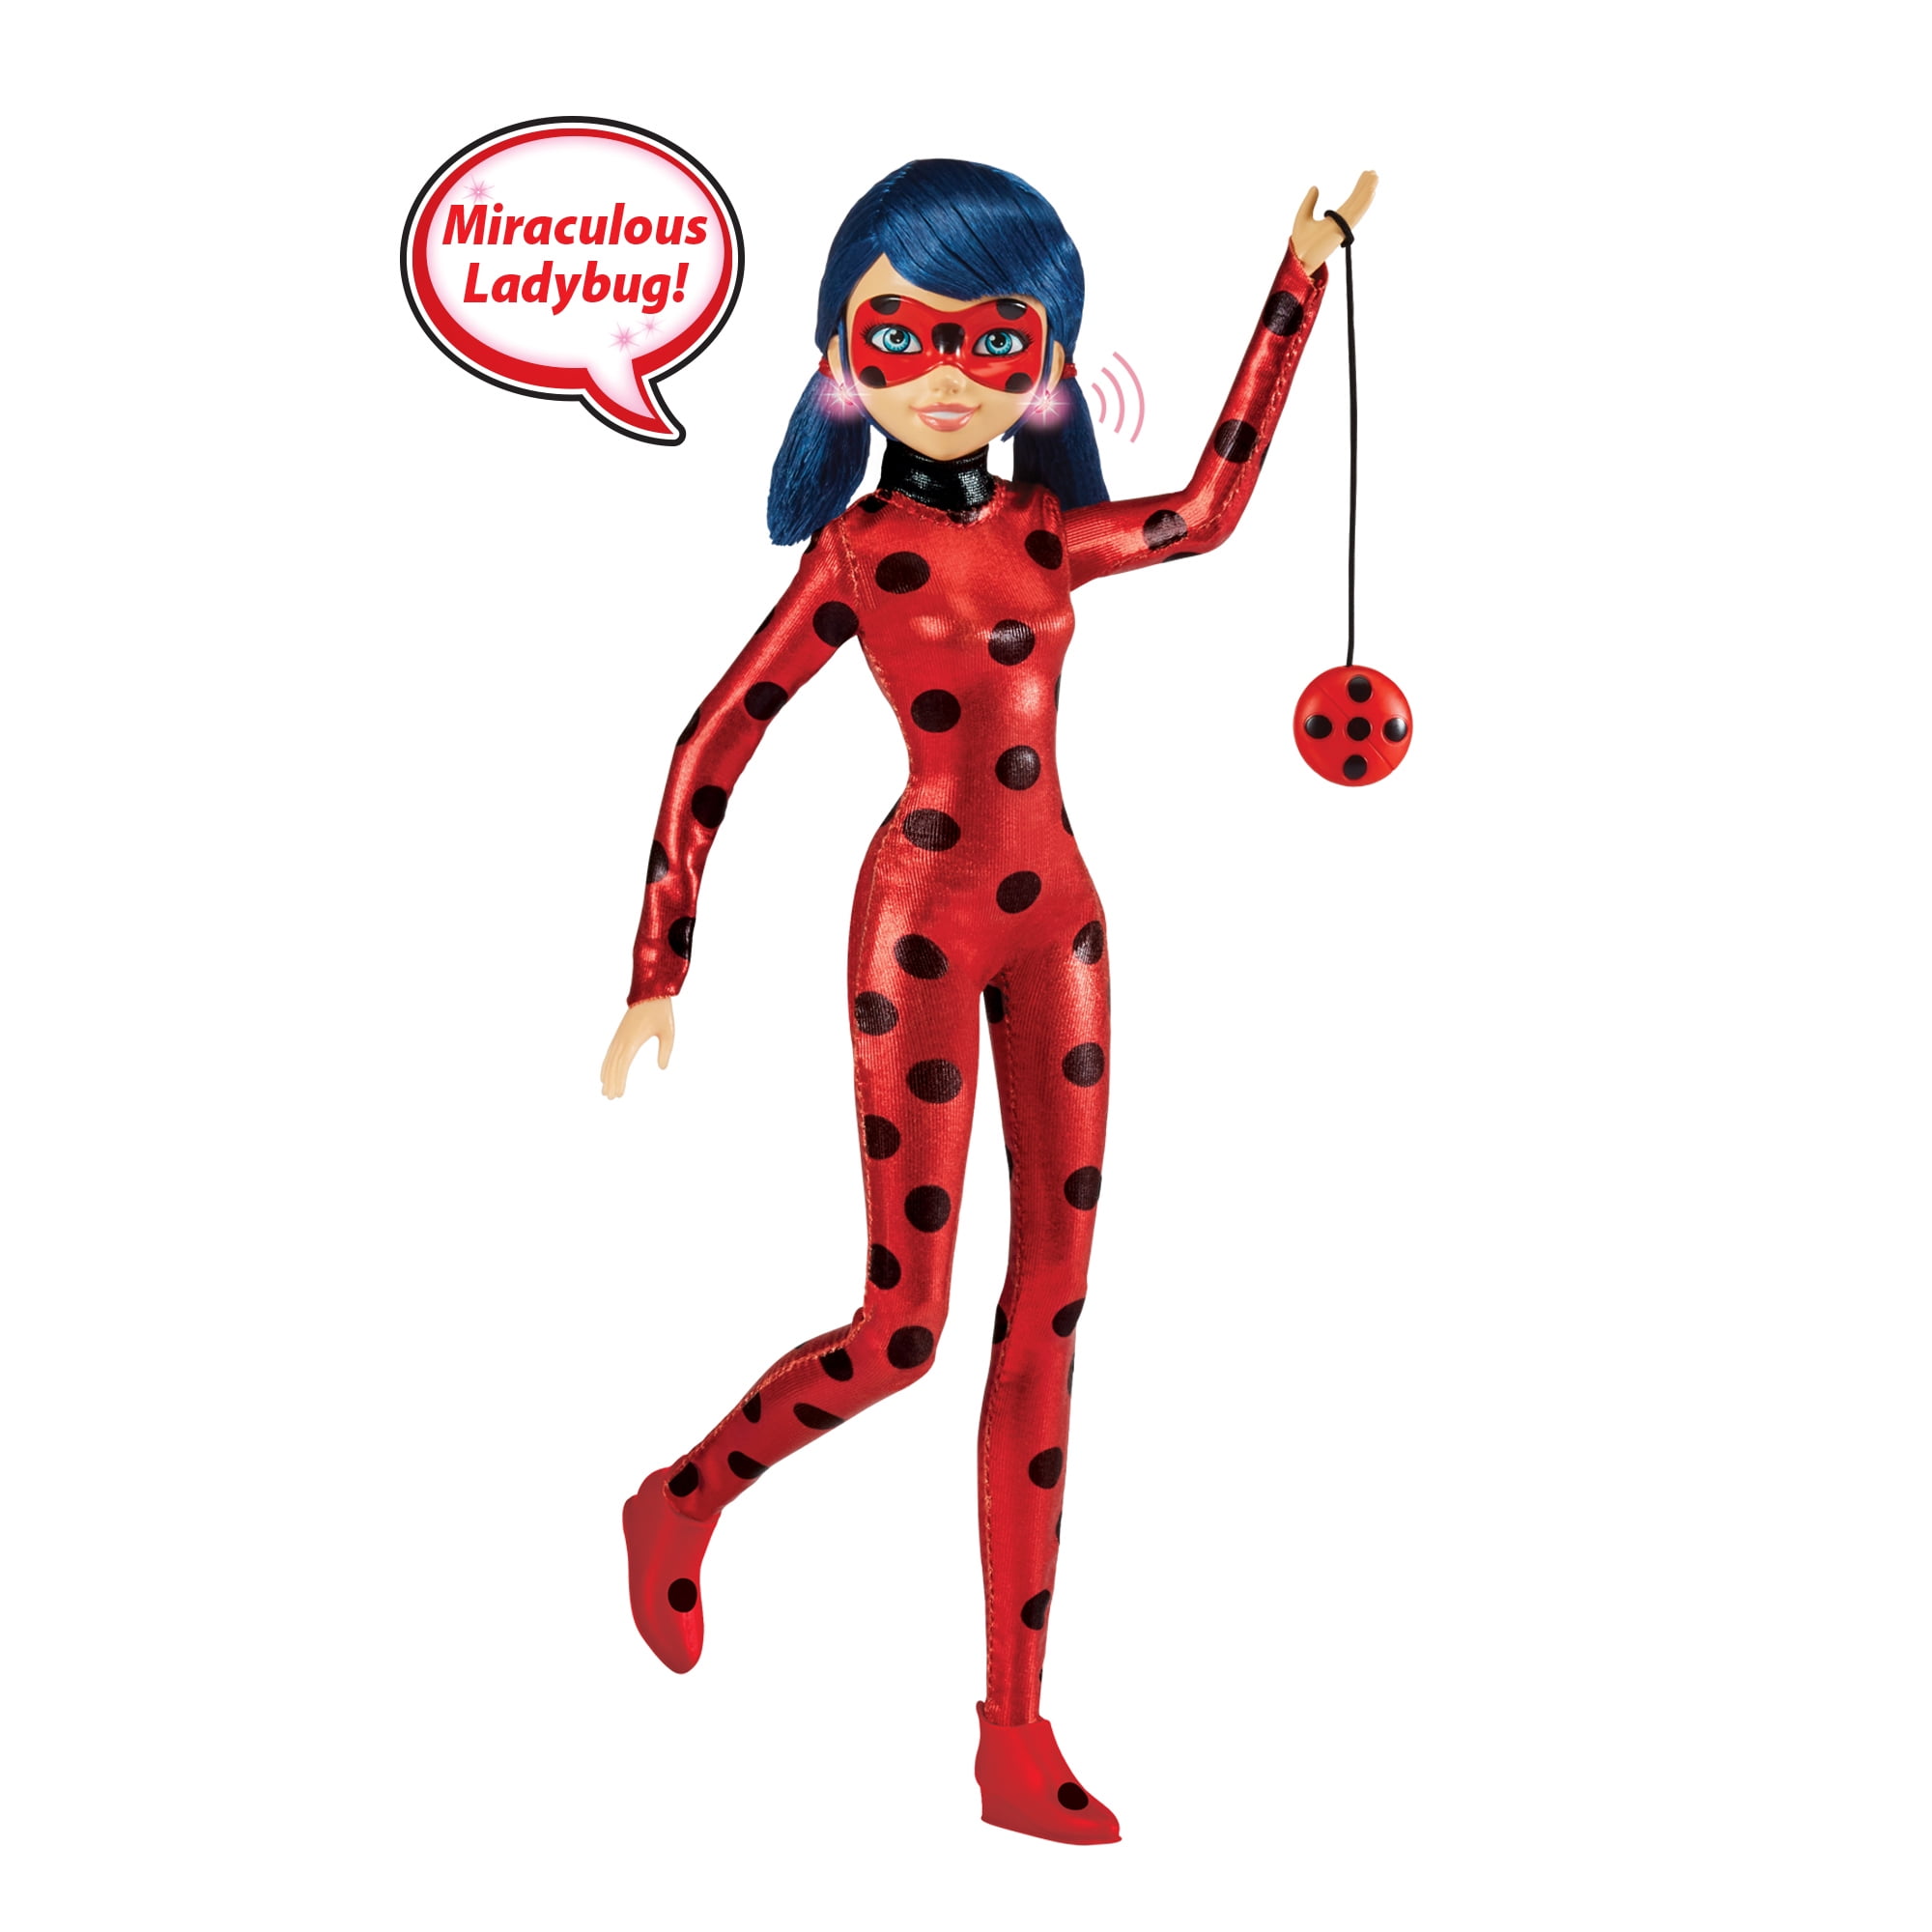 Miraculous Ladybug Talk & Sparkle Ladybug Deluxe Fashion Doll w